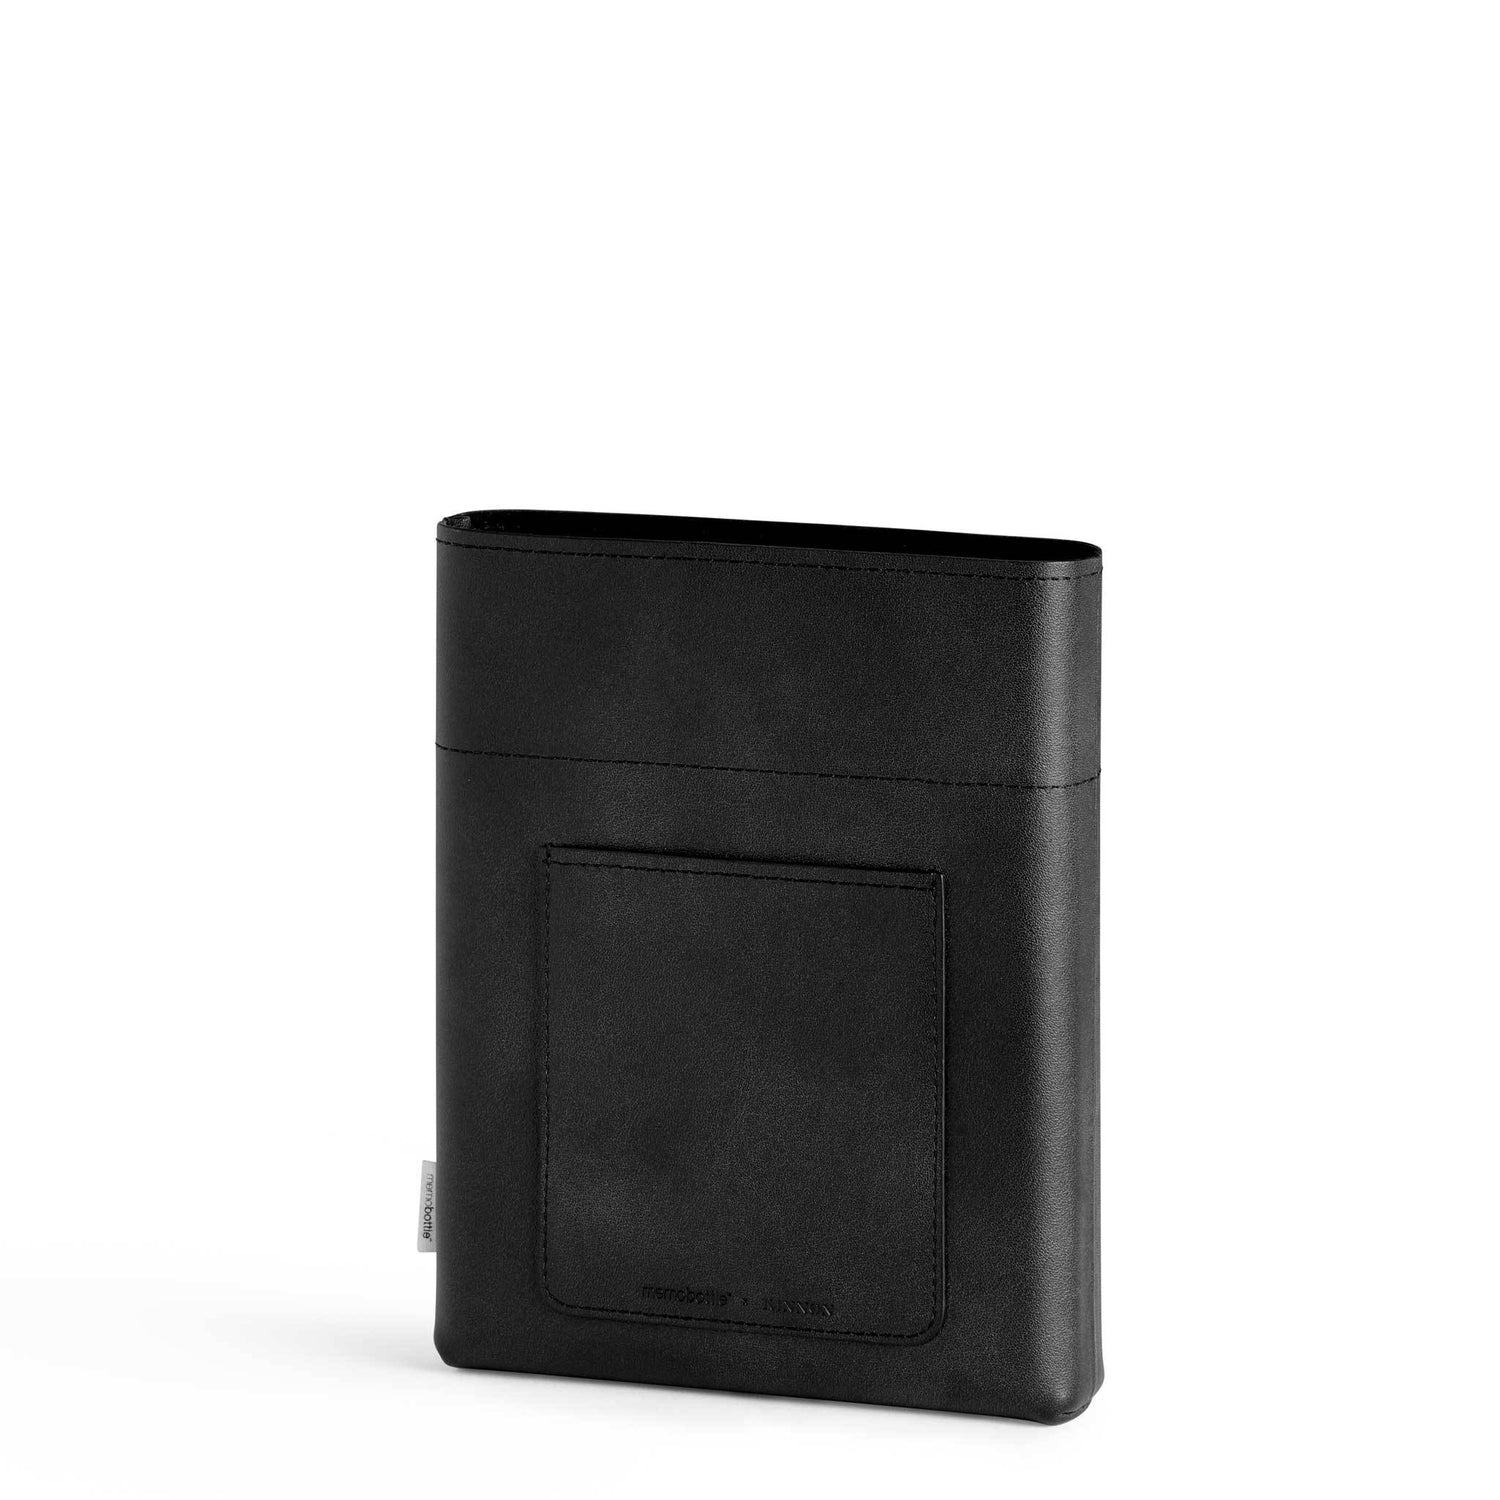 A5 Leather Sleeve - Black – memobottle™